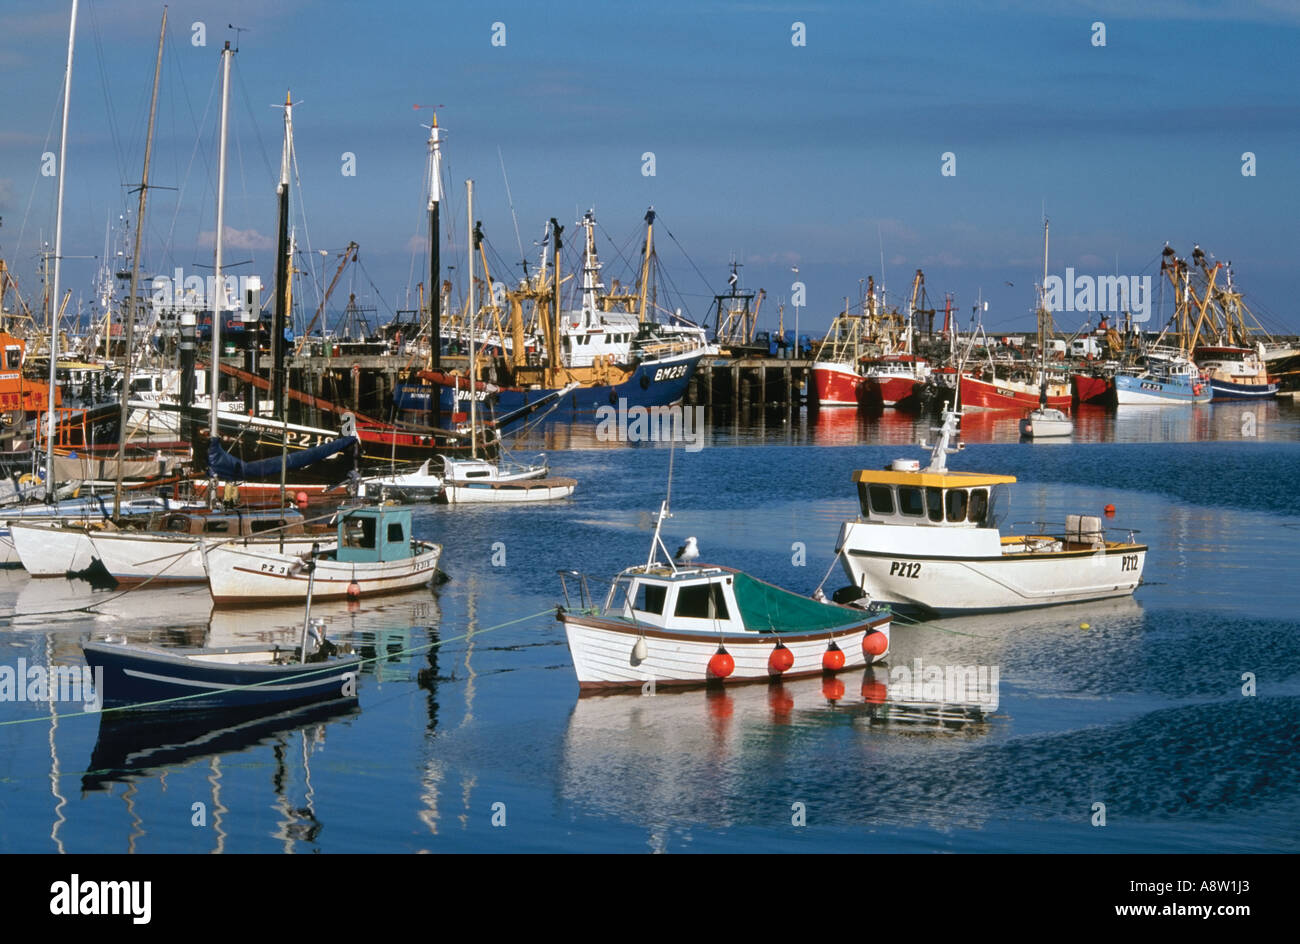 Bateaux de pêche dans le port de Newlyn, West Cornwall, England, UK Banque D'Images